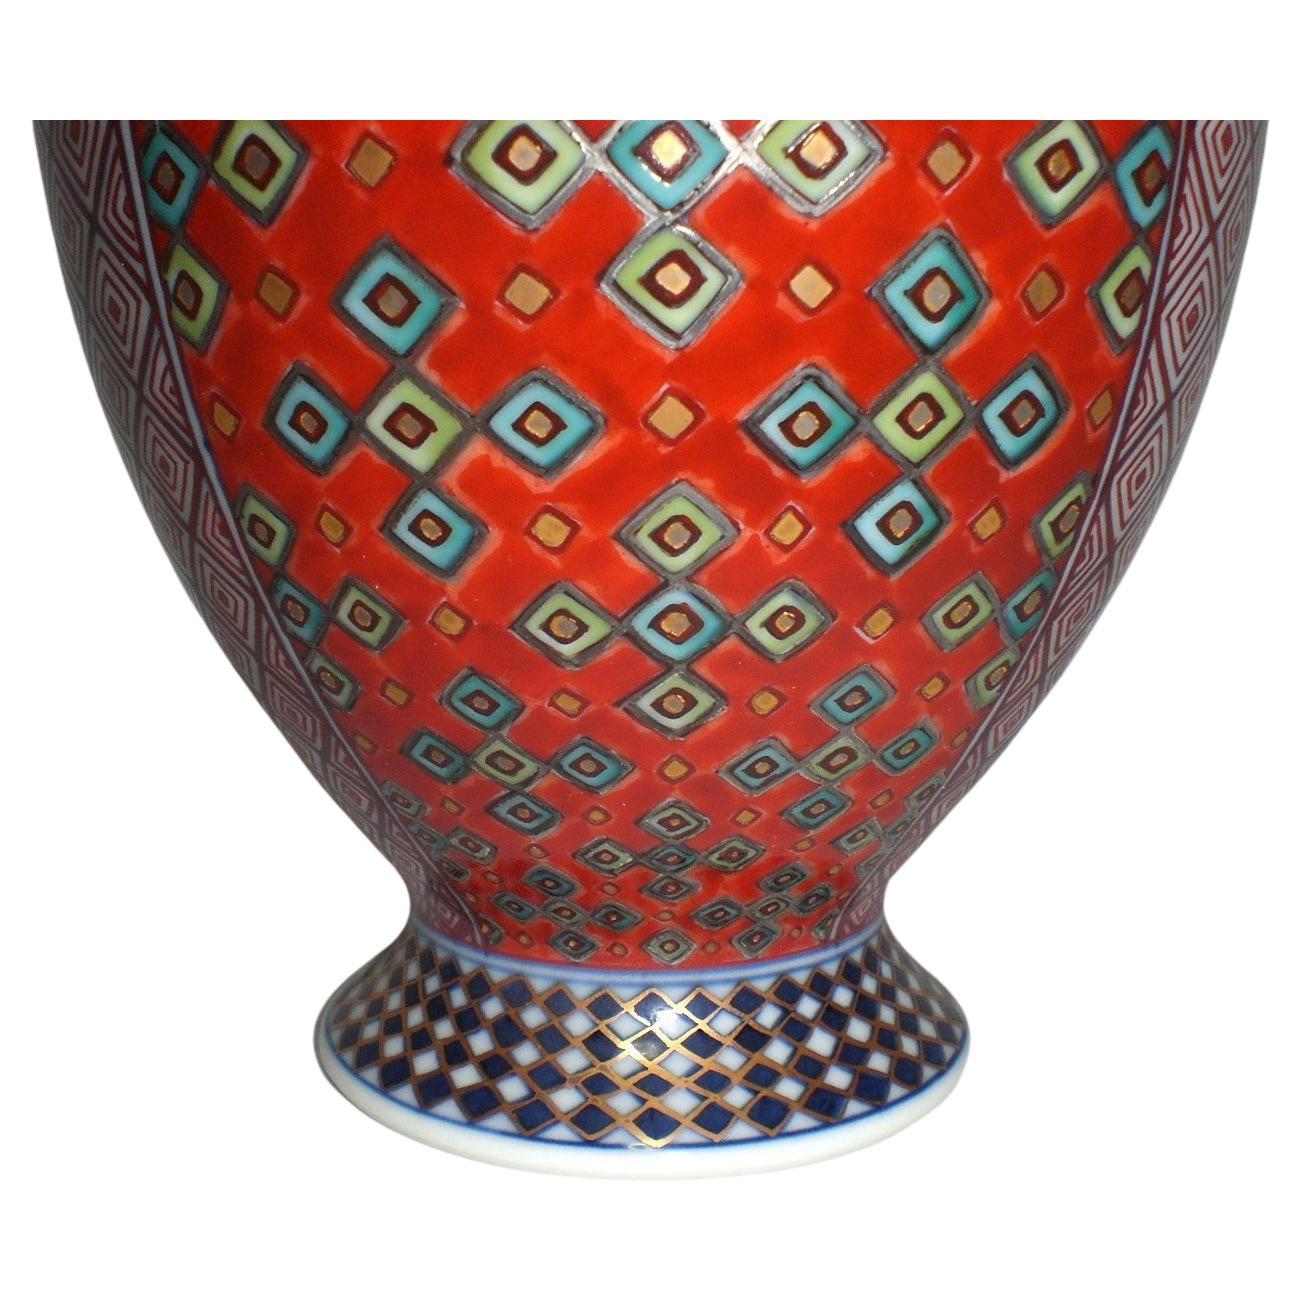 Exquis vase en porcelaine décorative contemporaine japonaise d'une forme extraordinaire présentant deux fascinants et détaillés motifs de progression géométrique extrêmement complexes peints à la main en rouge et bleu. Ce chef-d'œuvre signé par un